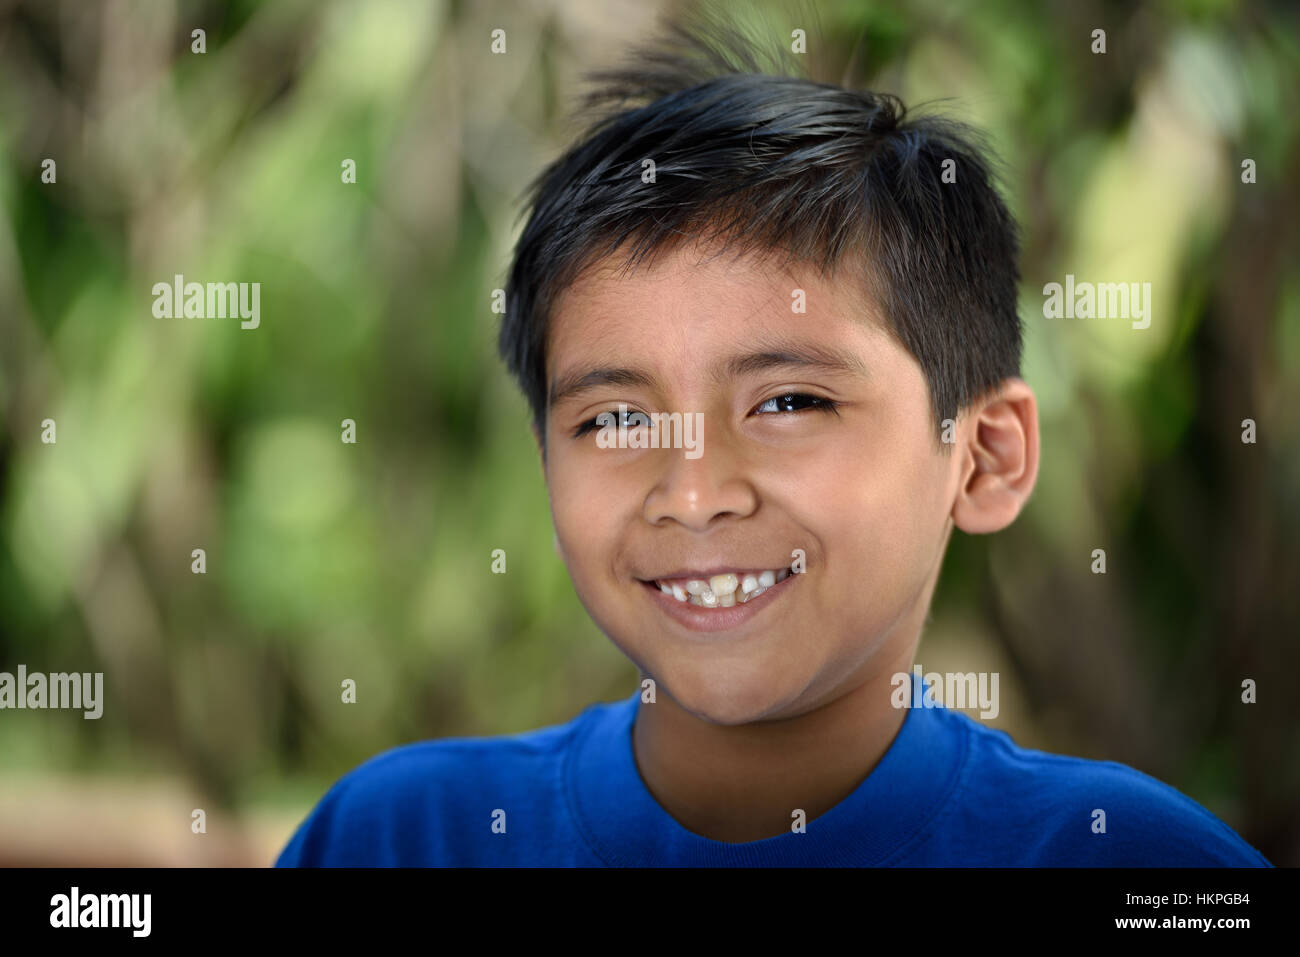 Chụp ảnh chân dung của bé trai La-tinh với nụ cười trong thiên nhiên: Bức ảnh chân dung của bé trai La-tinh với nụ cười trong thiên nhiên là một tác phẩm nghệ thuật đẹp mắt. Với màn hình đẹp và chất lượng hình ảnh tuyệt vời, bức ảnh này sẽ cho thấy sức sống và sự trẻ trung trong mắt các bé. Hãy tham gia và khám phá thế giới của những bức ảnh chân dung thú vị như thế này. 